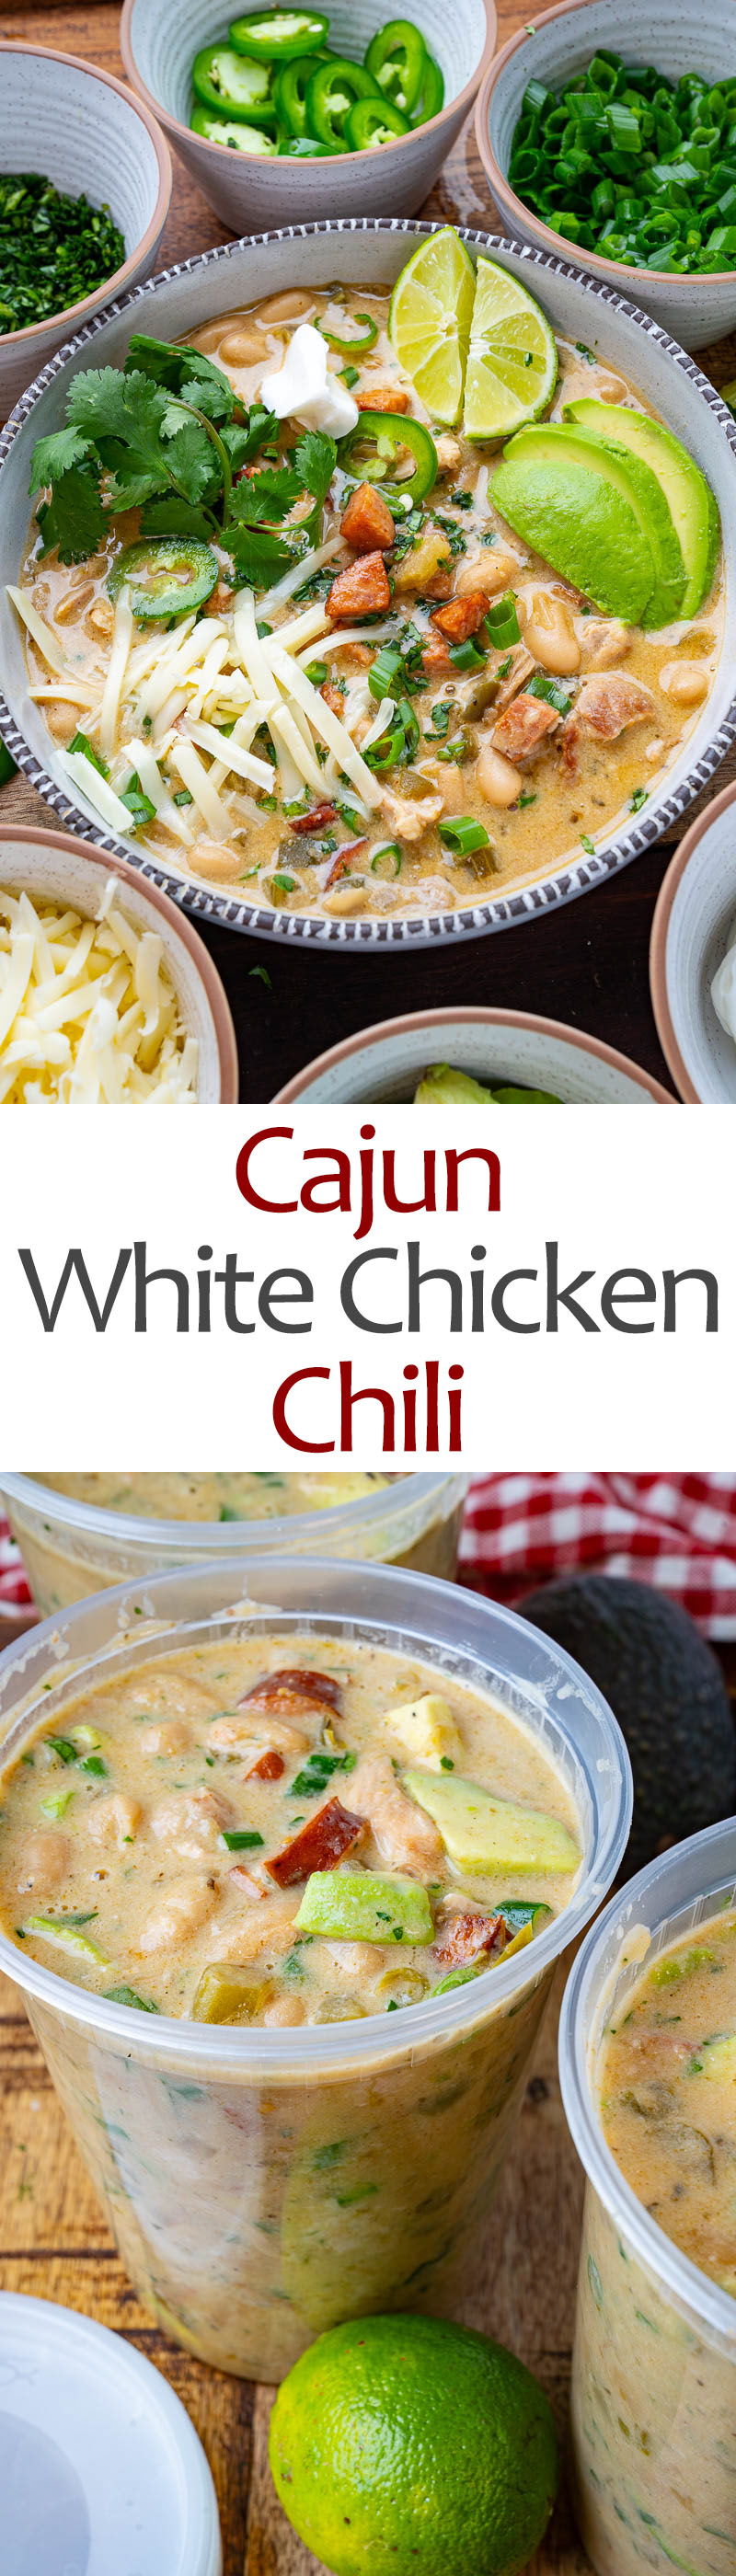 Cajun White Chicken Chili